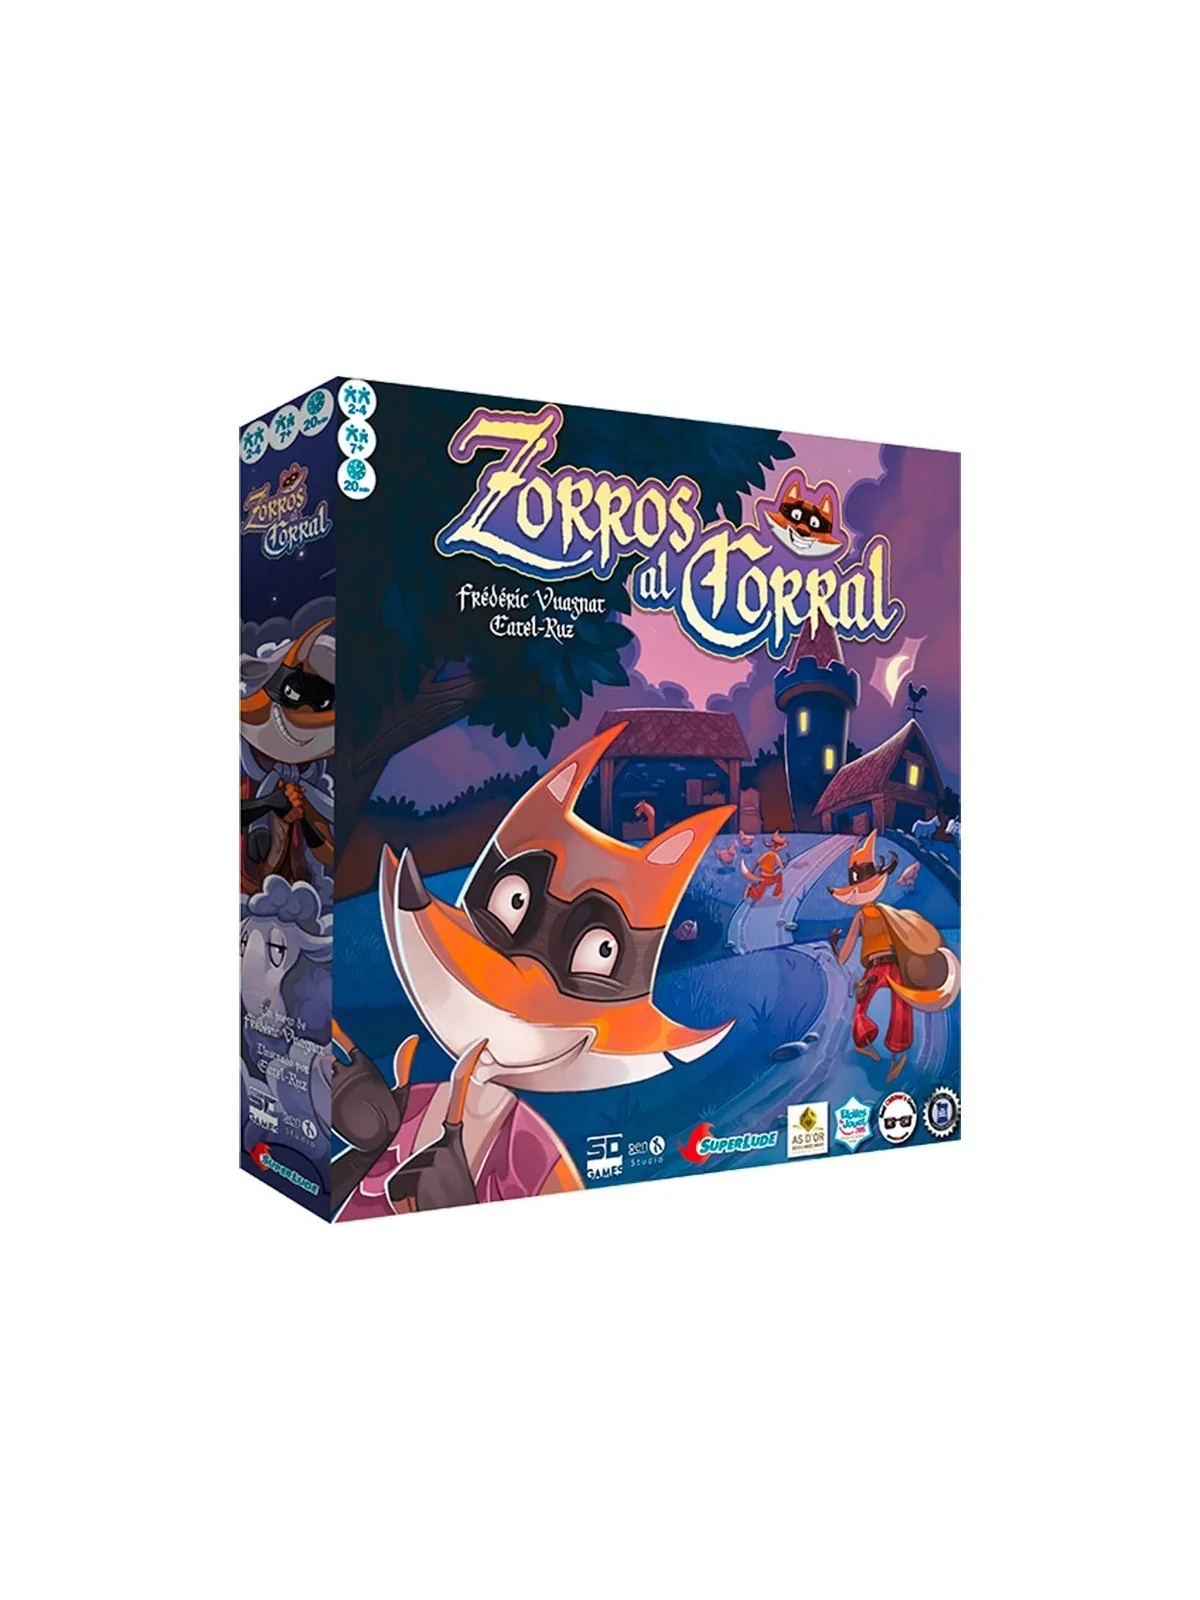 Comprar Zorros al Corral barato al mejor precio 22,46 € de SD GAMES